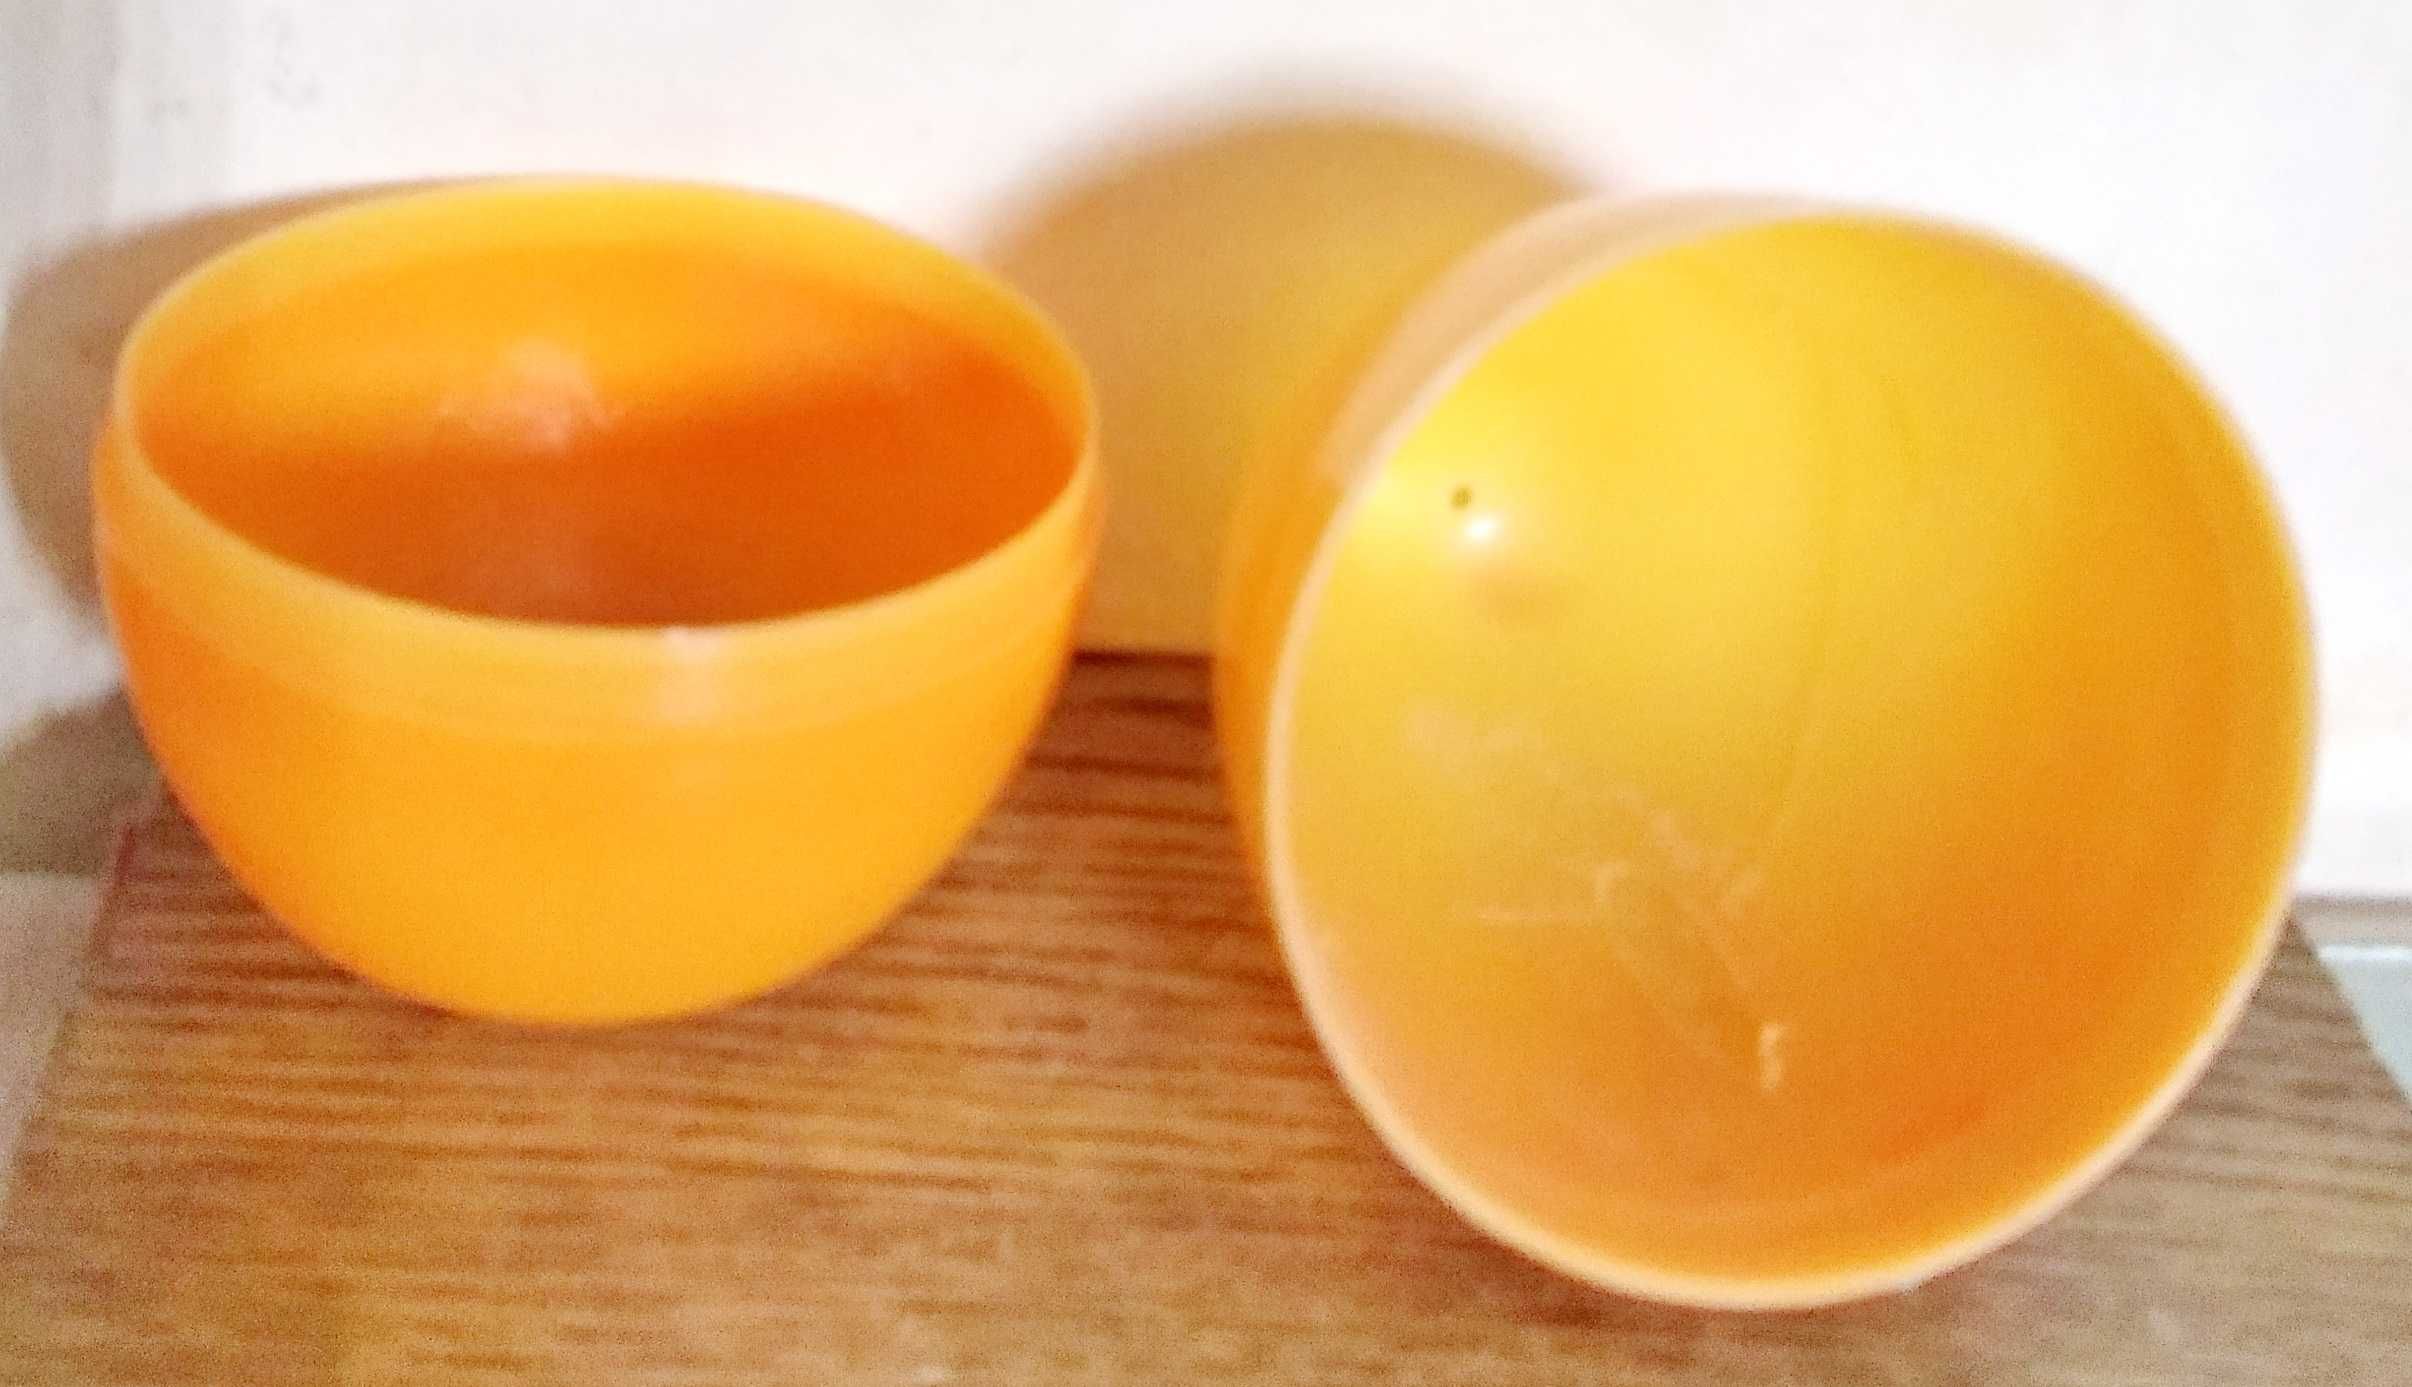 Пластмассовое яйцо игрушка, цена дана за одну штуку